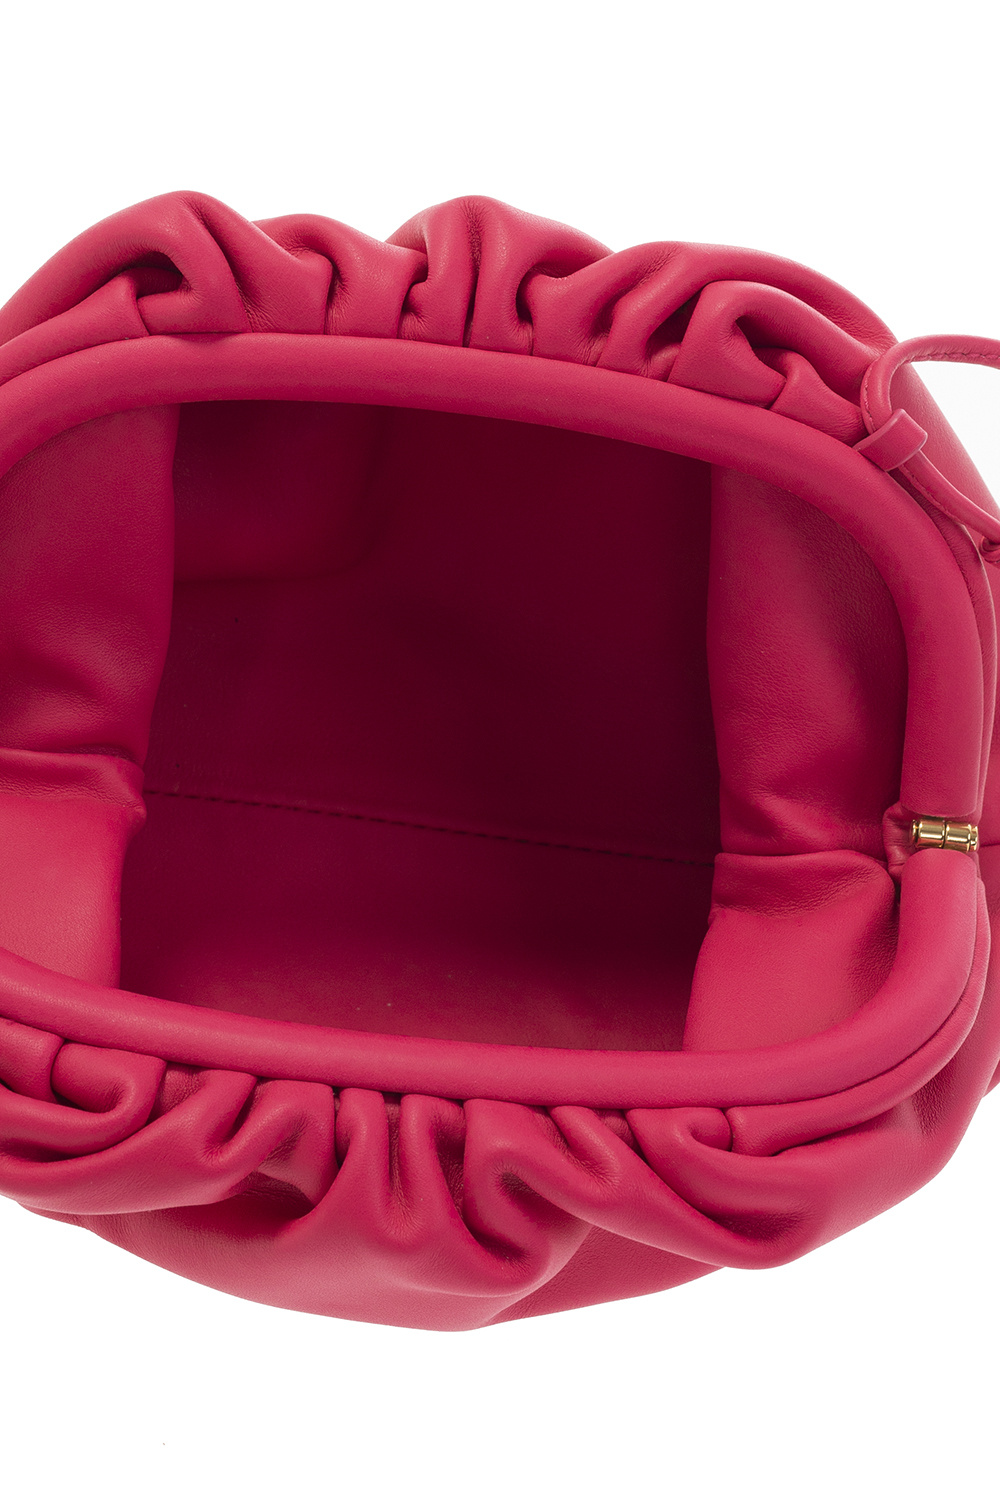 Bottega Veneta 'Mini Pouch' shoulder bag, Women's Bags